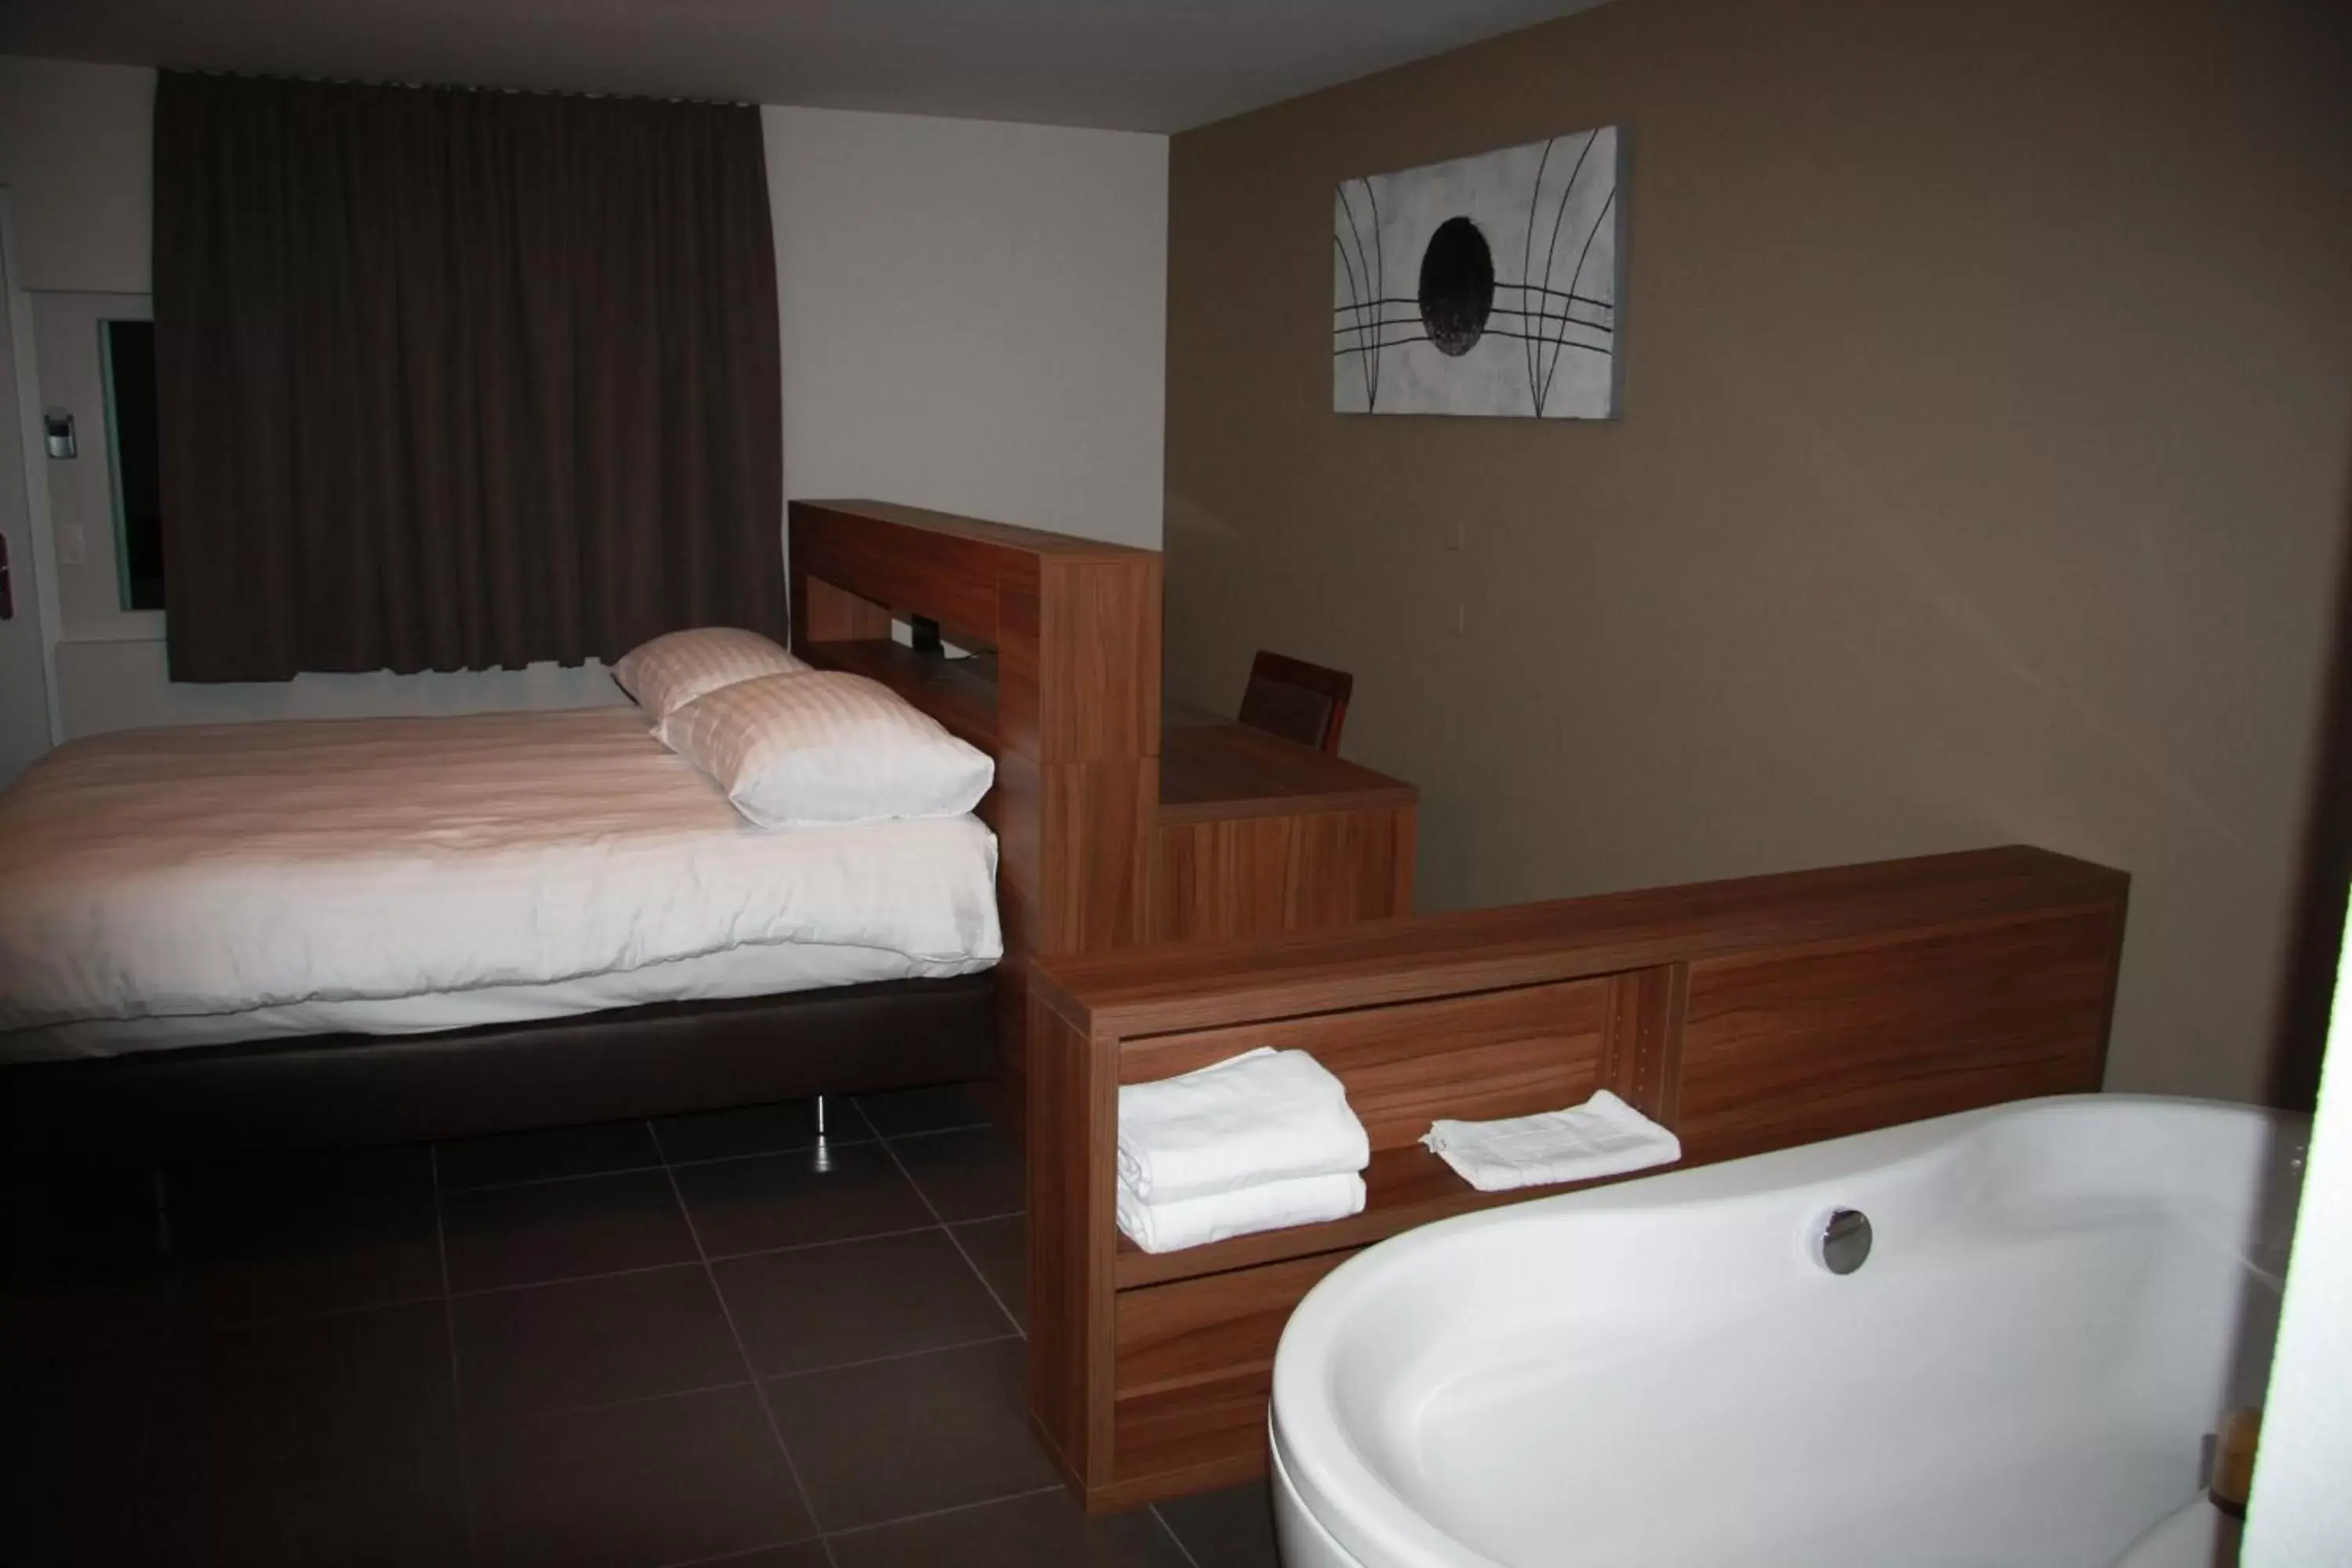 Bathroom in Hotel Du Soleil